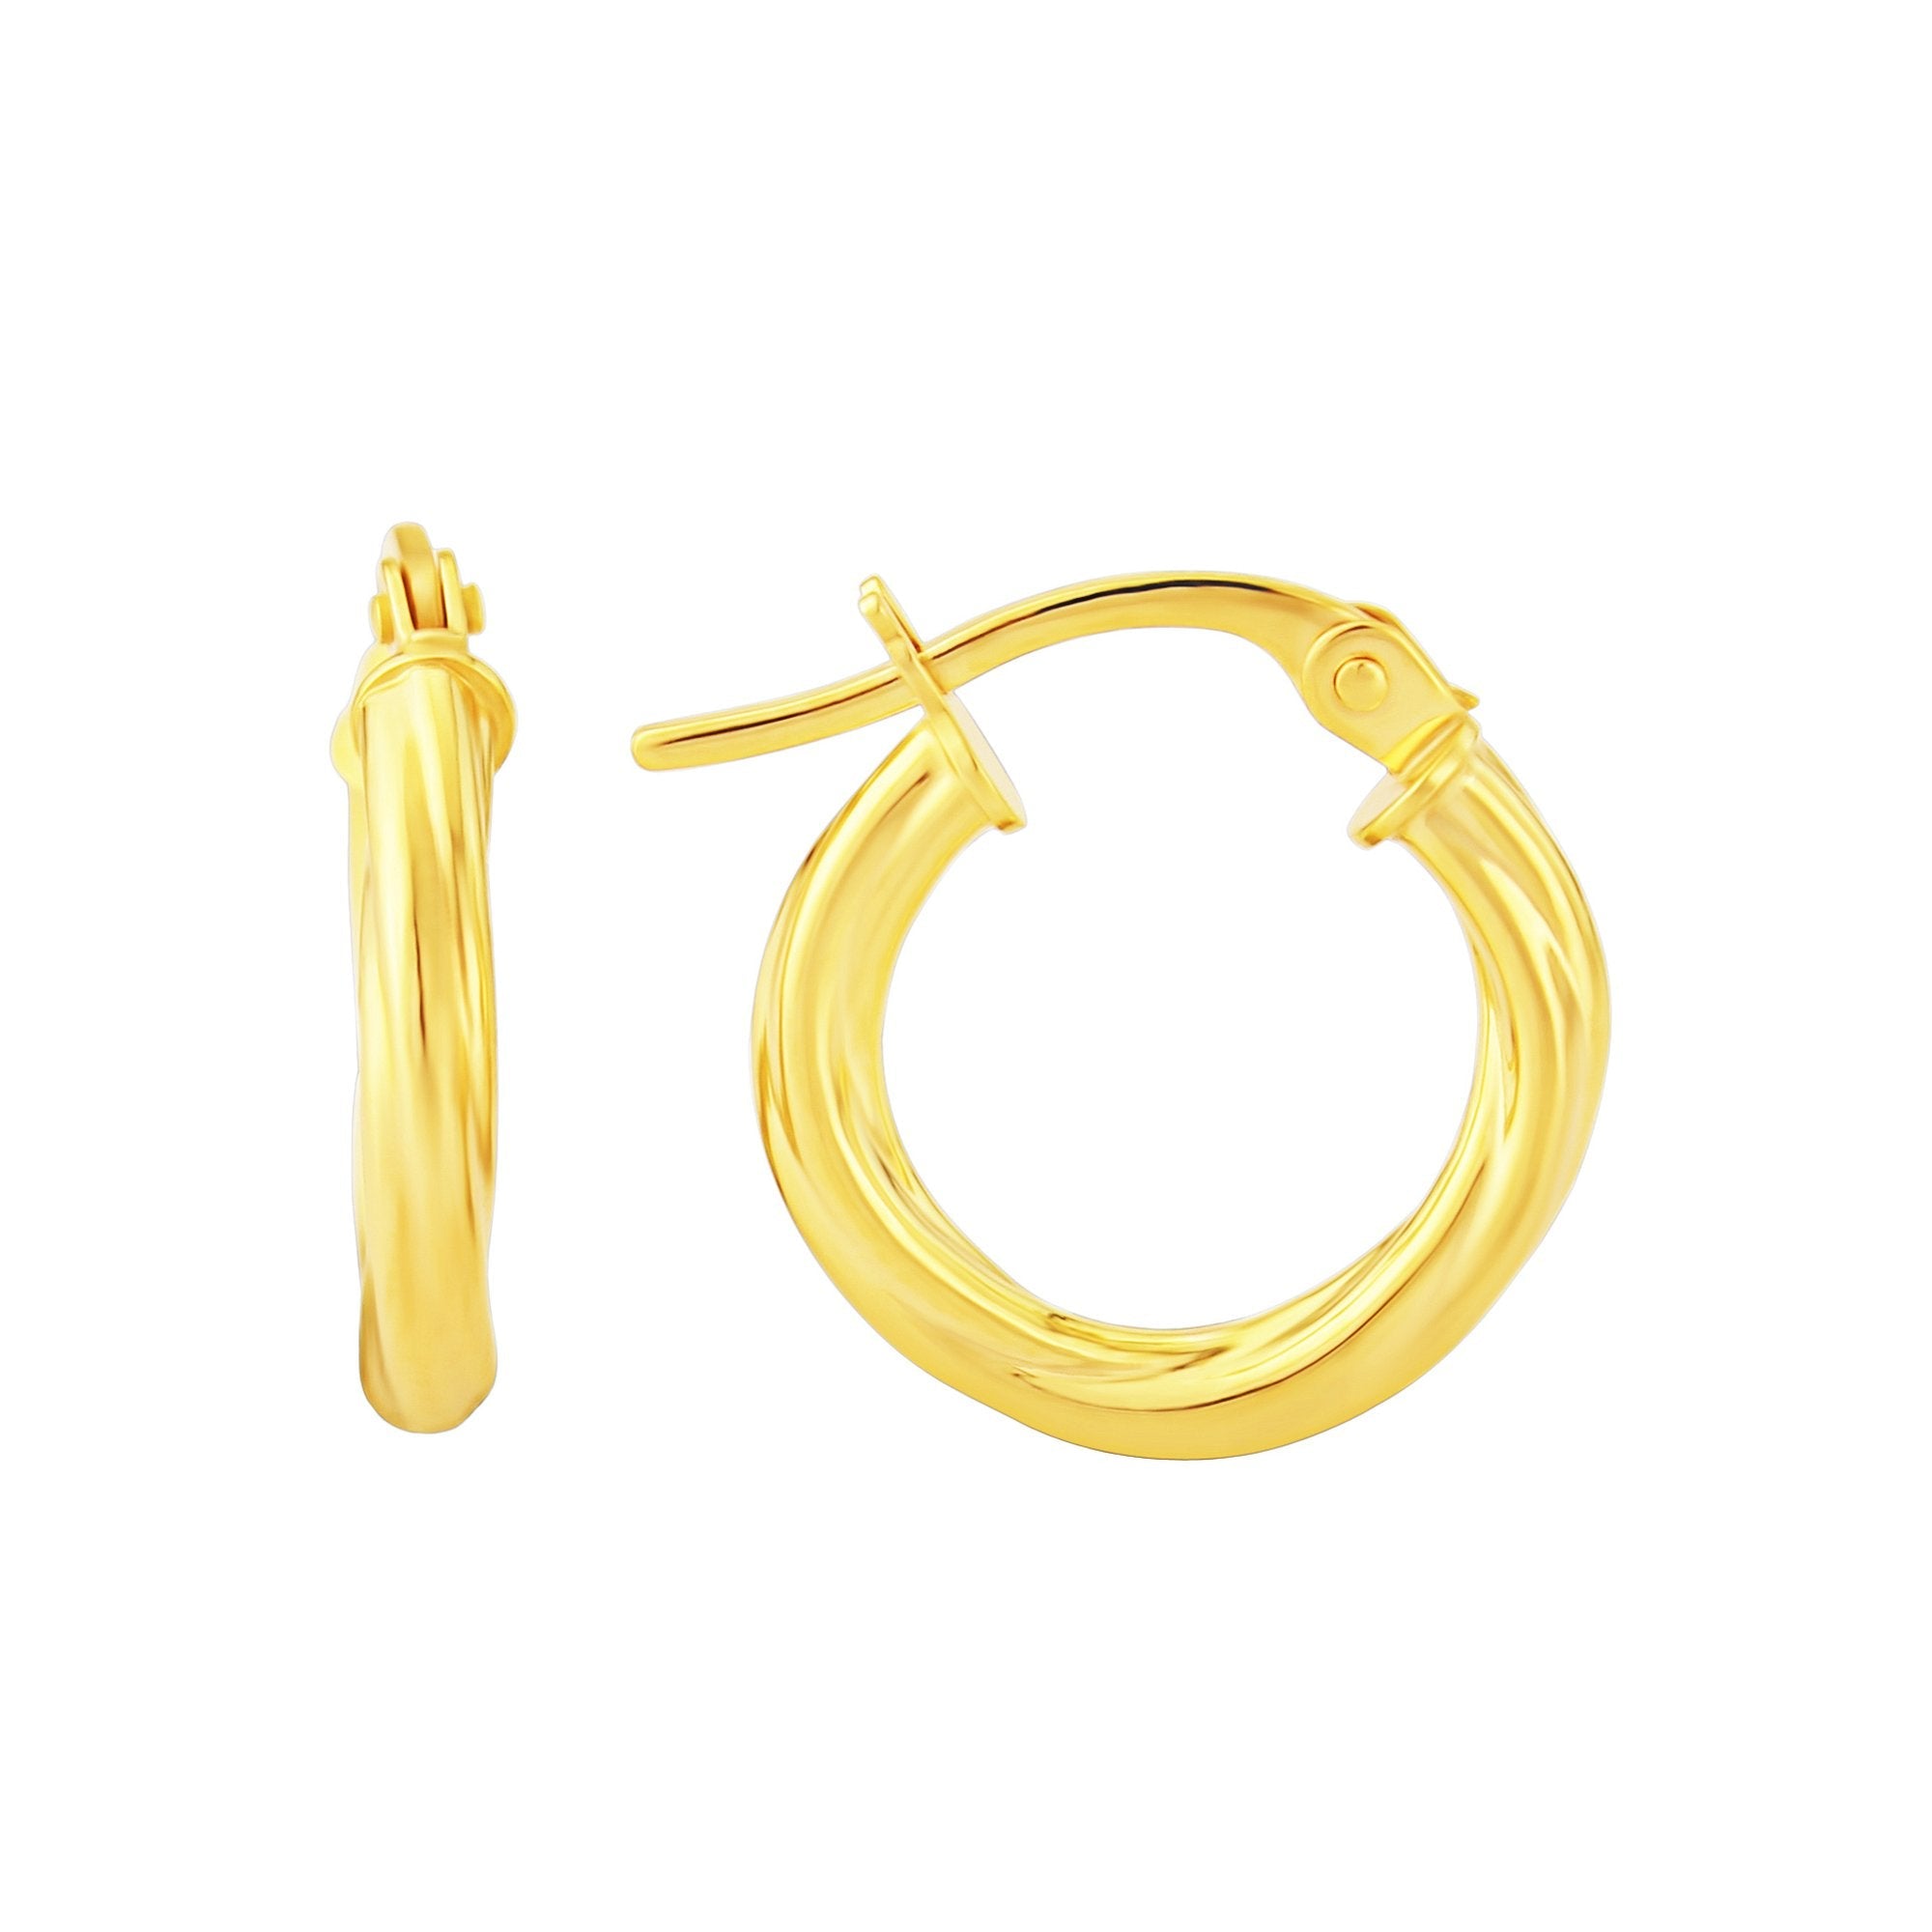 9ct gold 10mm twisted hoop earrings